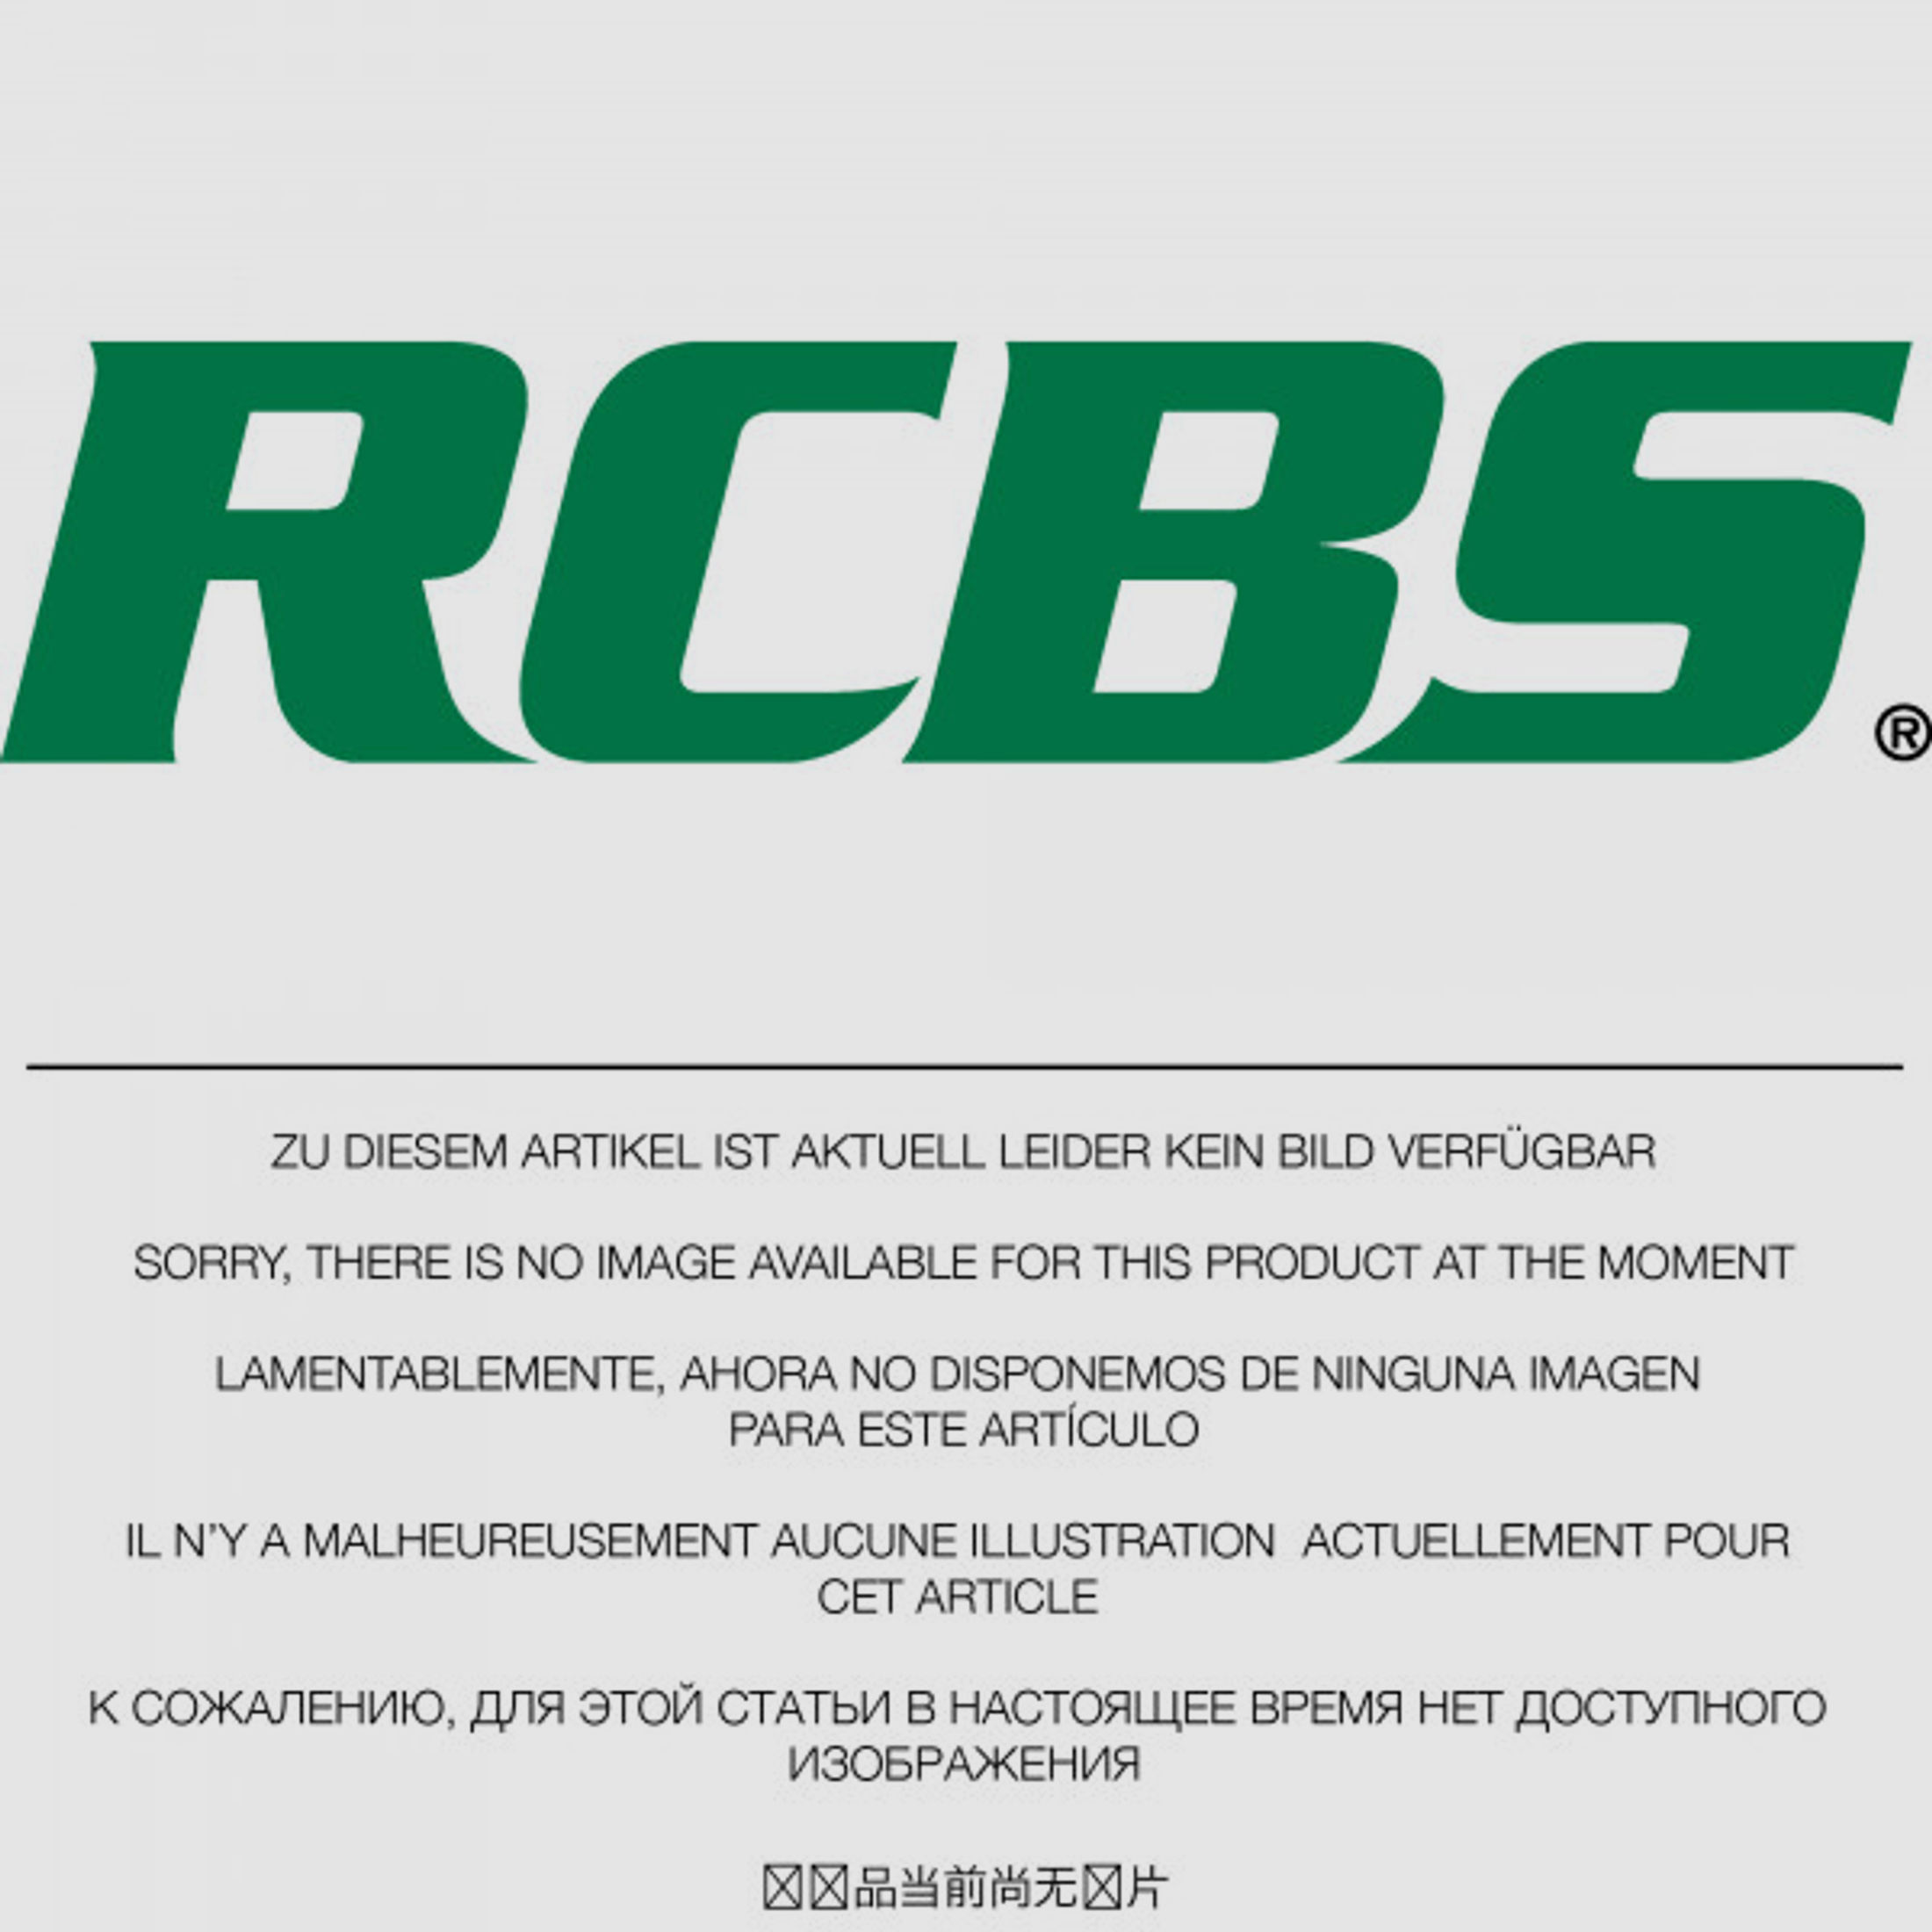 RCBS Lube-A-Matic Top Punch Geschoss Setzstempel Nr. 420 #82541